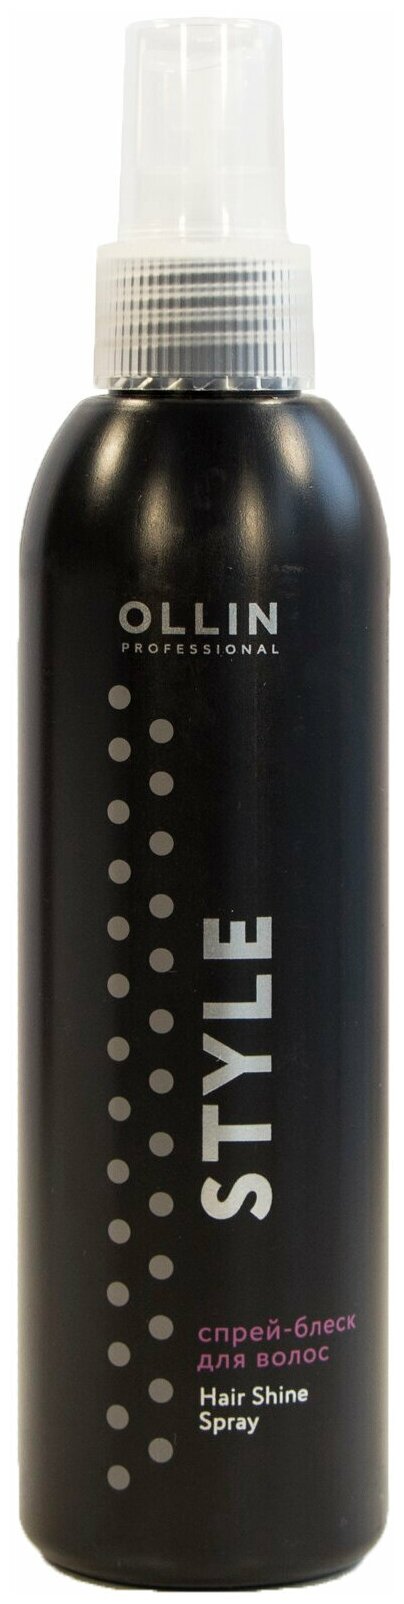 OLLIN Professional Спрей-блеск для волос